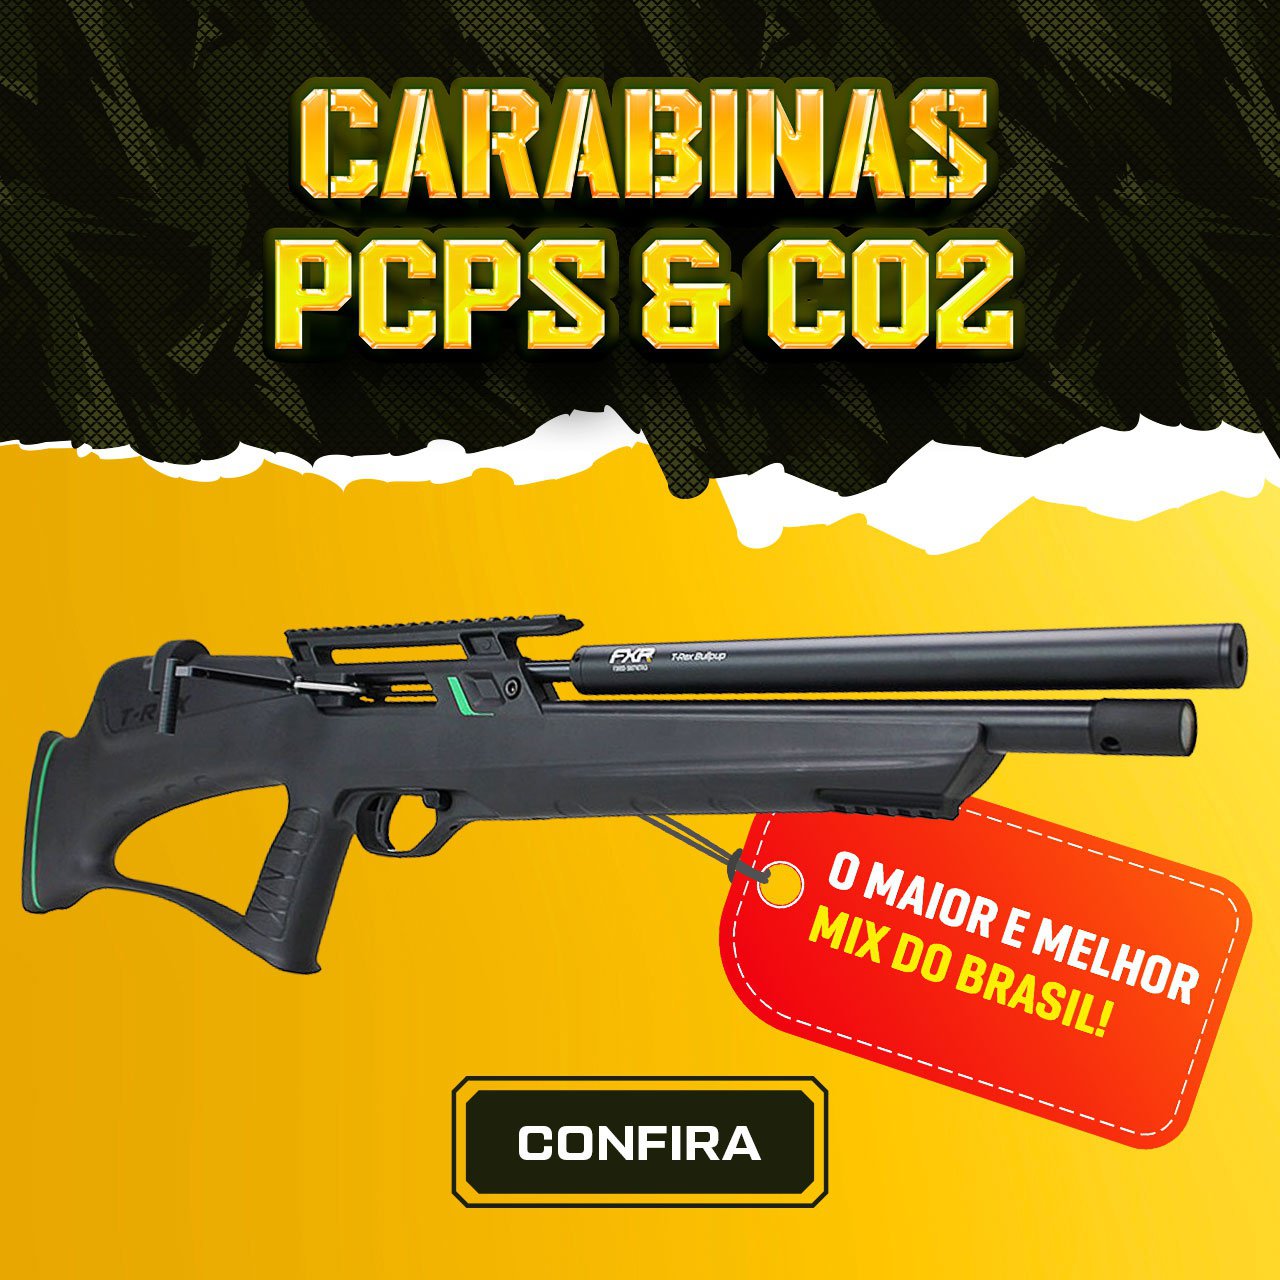 Carabinas PCPs & CO2 - O Maior e melhor Mix do Brasil!